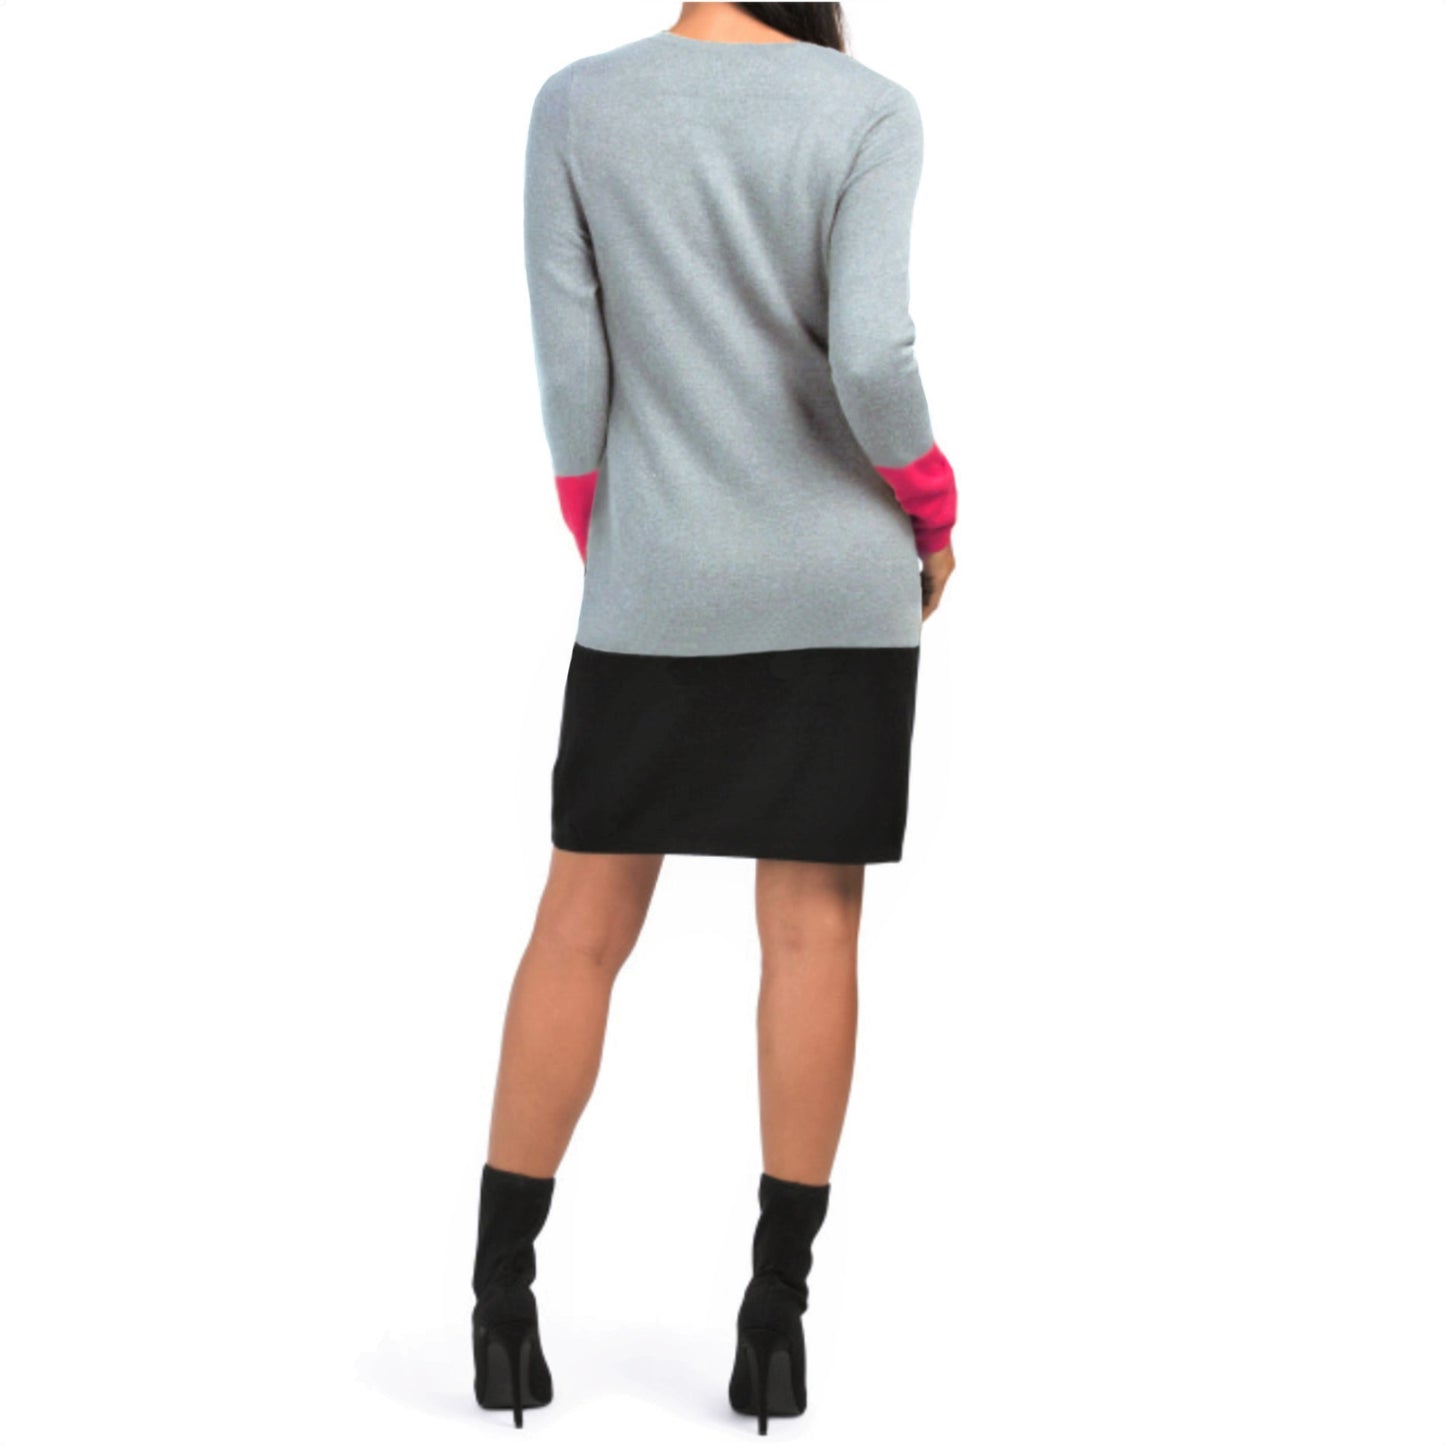 Nicole Miller Crew Neck Cotton Knit Color Block Sheath Sweater Mini Dress